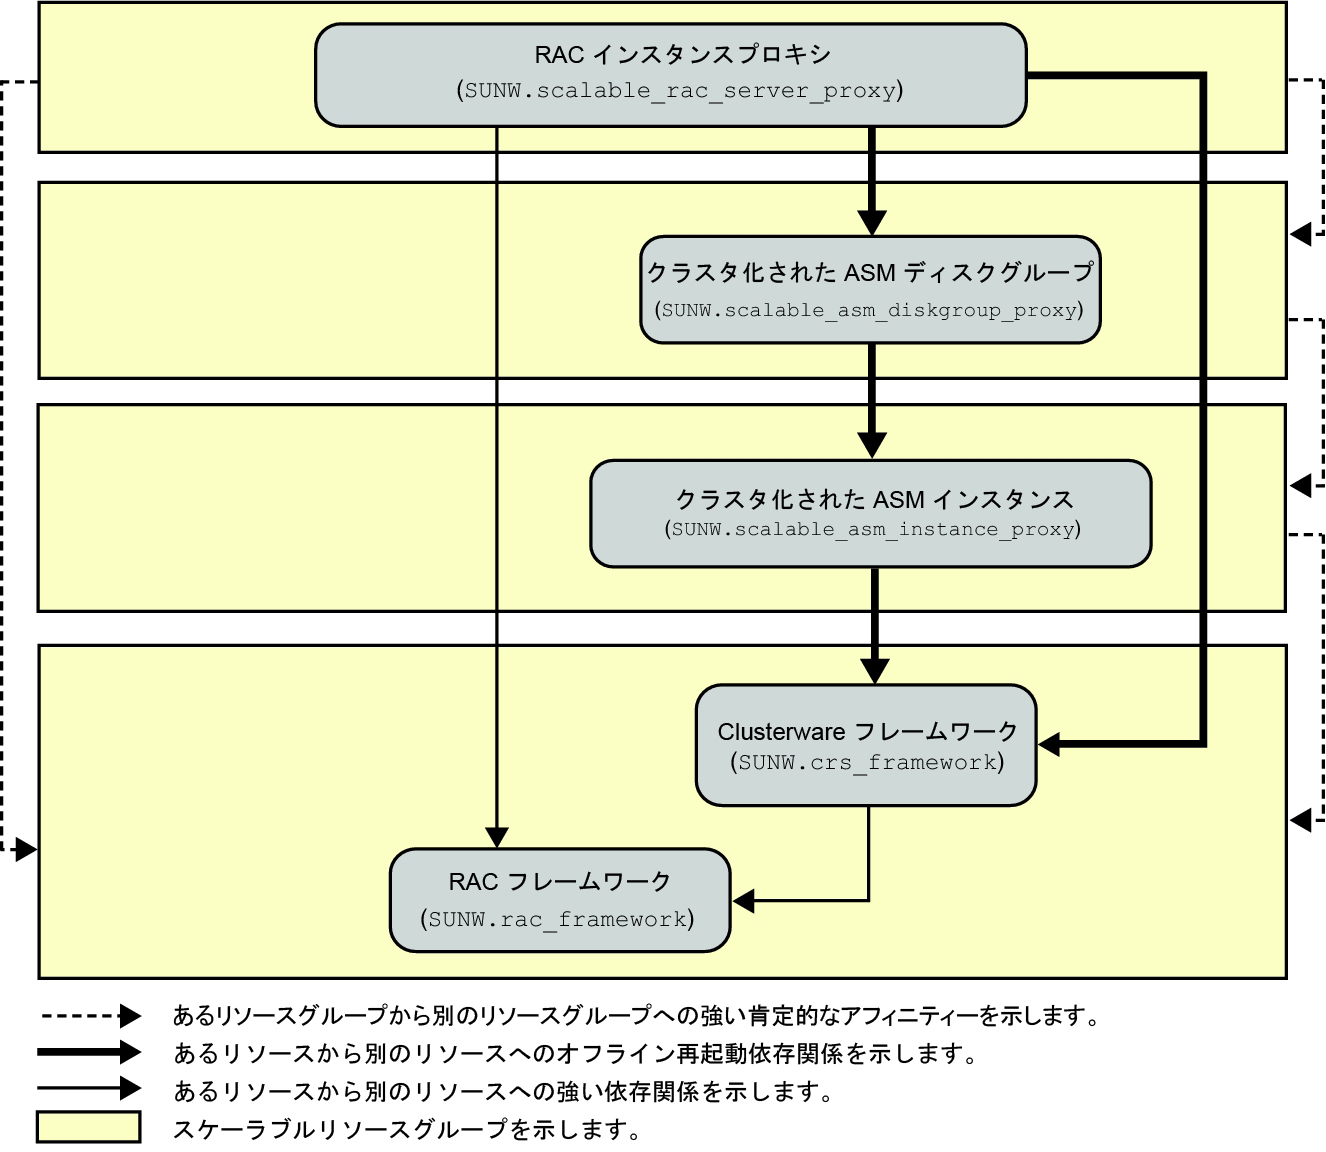 image:ストレージ管理を使用した Oracle RAC のサポート の構成を示す図